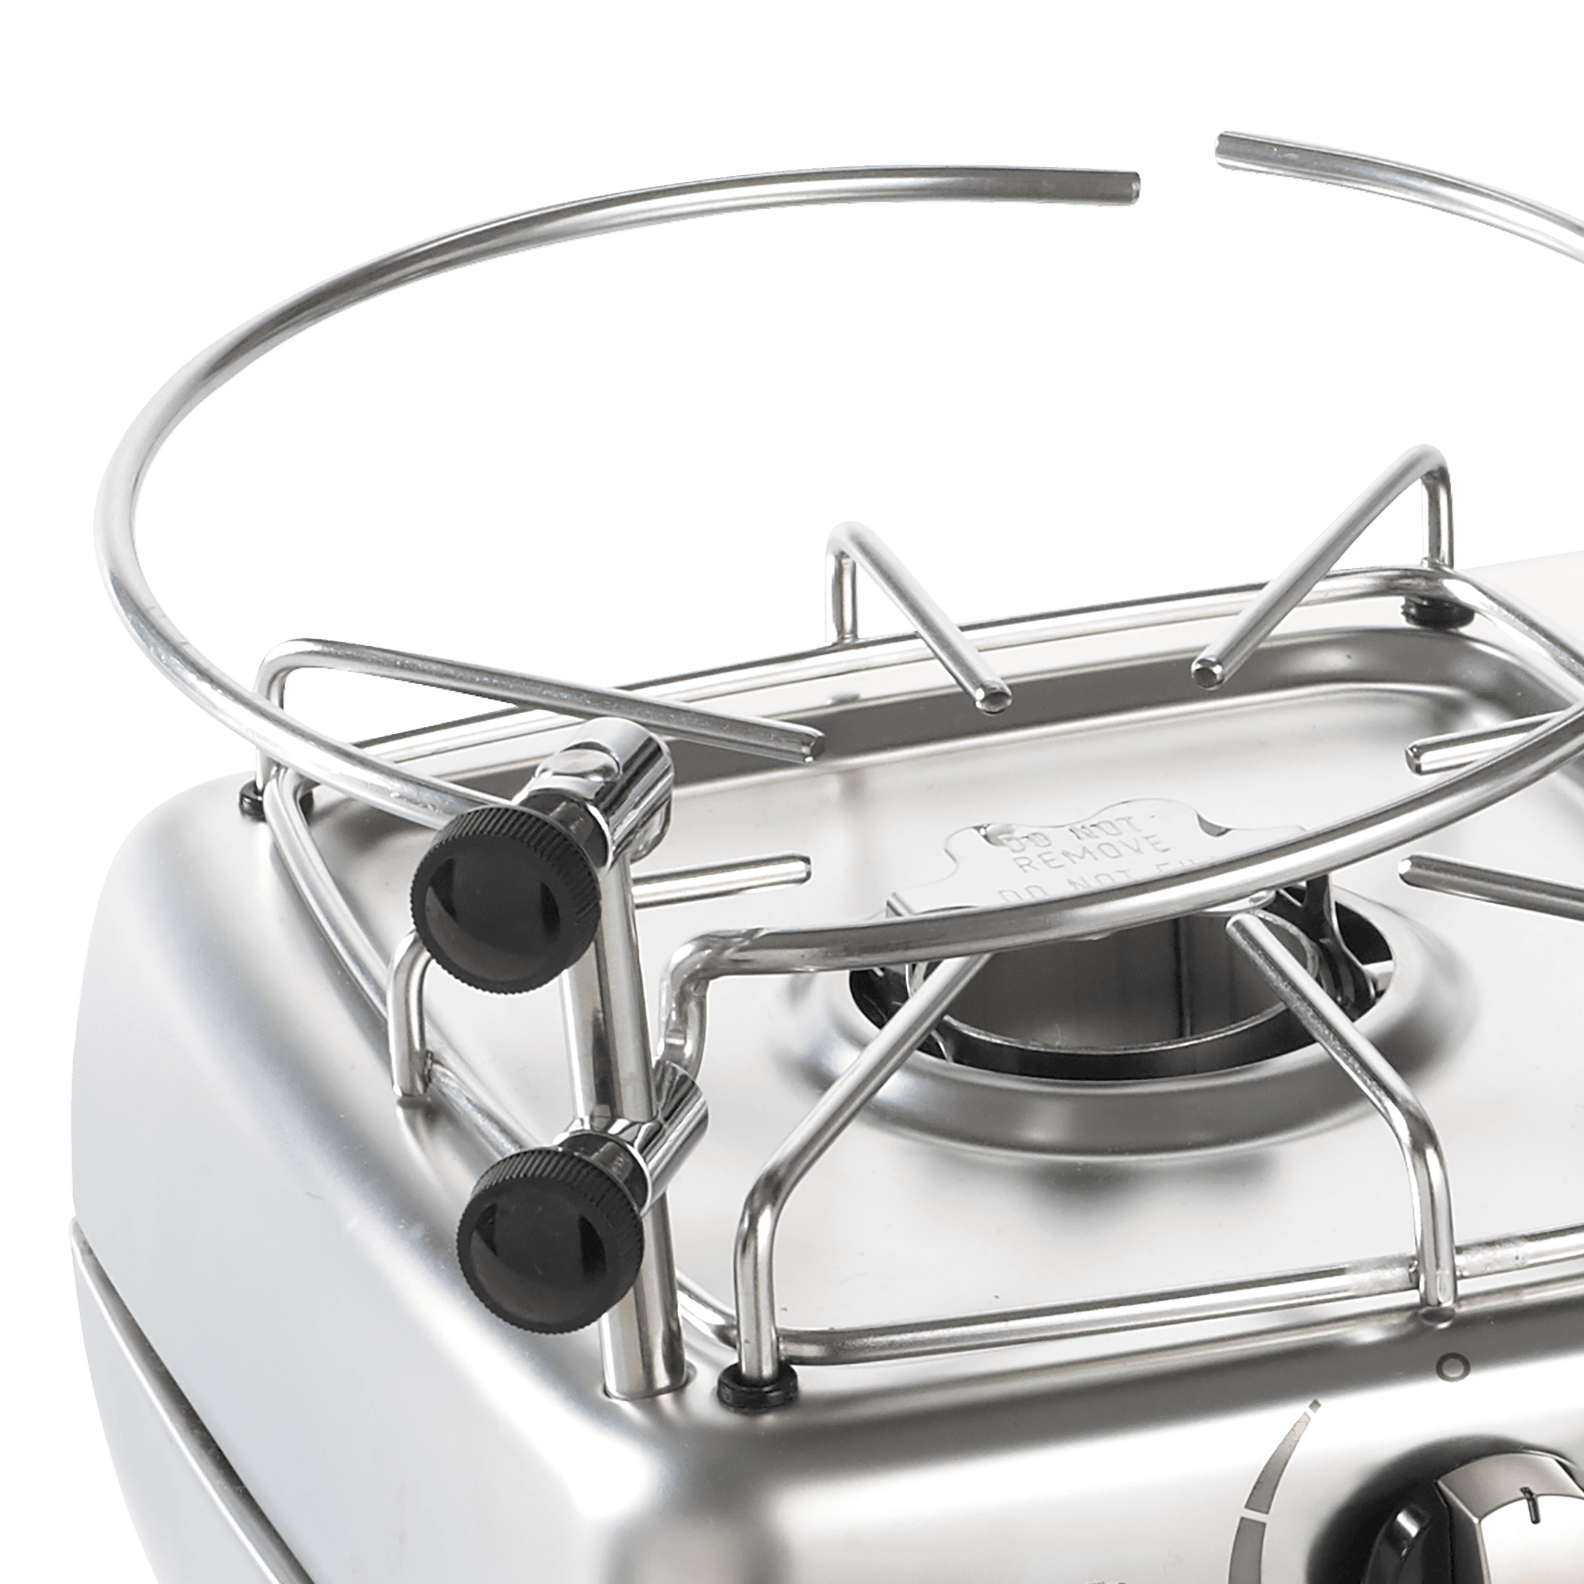 kompakt für Boot Dometic ORIGO One Wohnmobil oder Camping-Küche freistehender Spiritus-Kocher 1-flammig